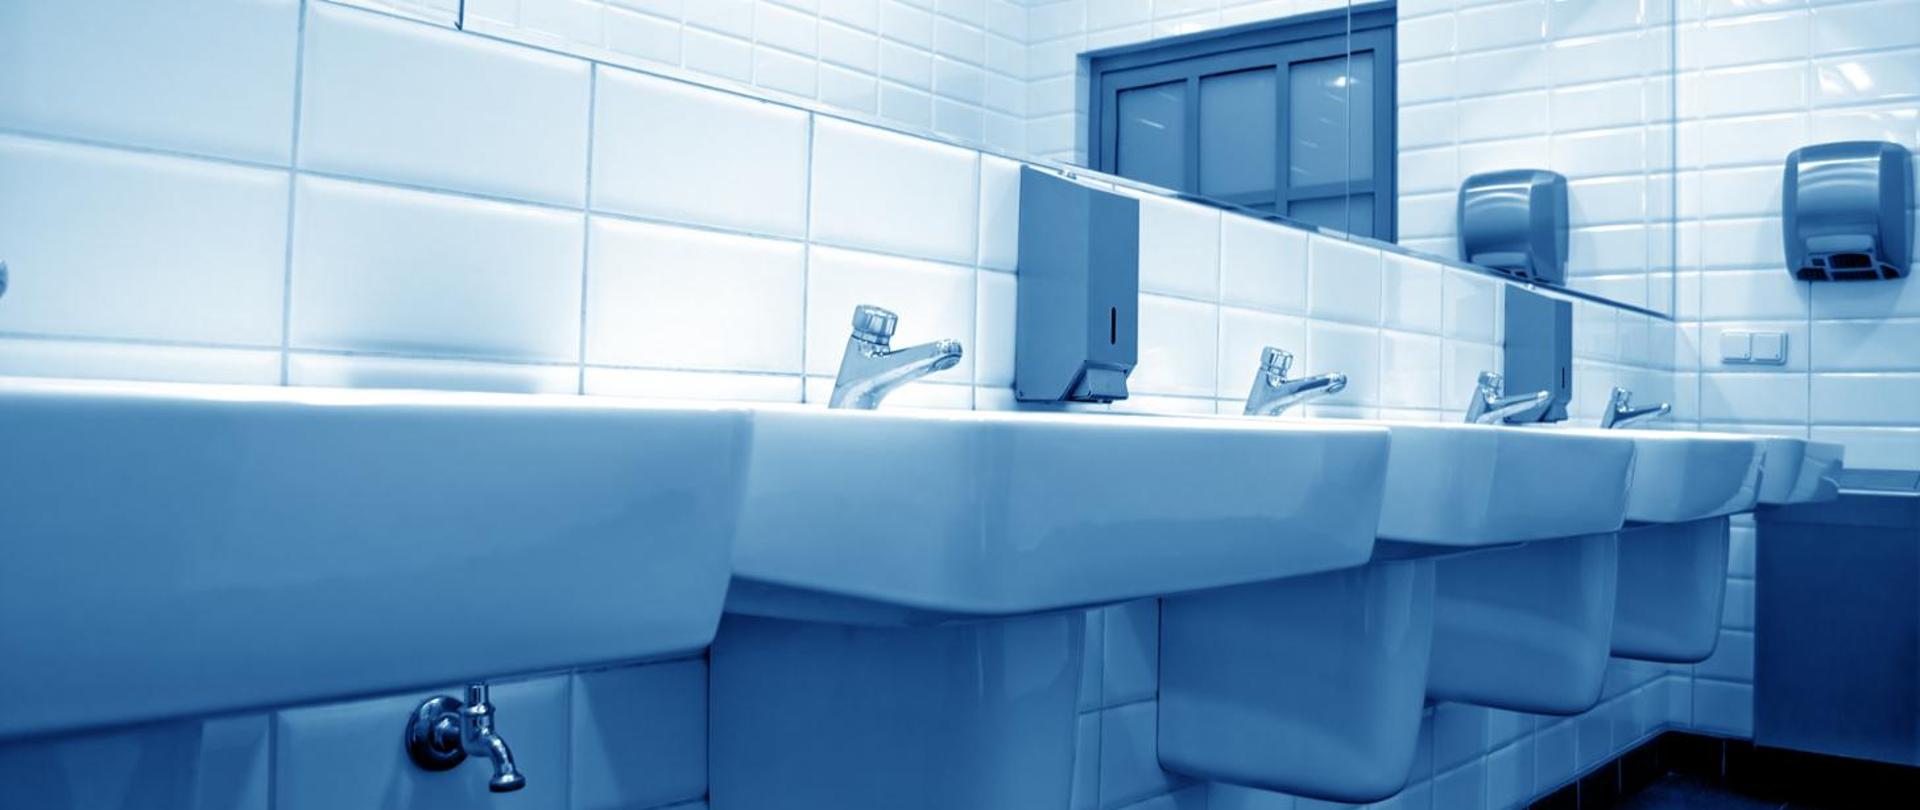 Zdjęcie przedstawia rząd umywalek w publicznej toalecie 